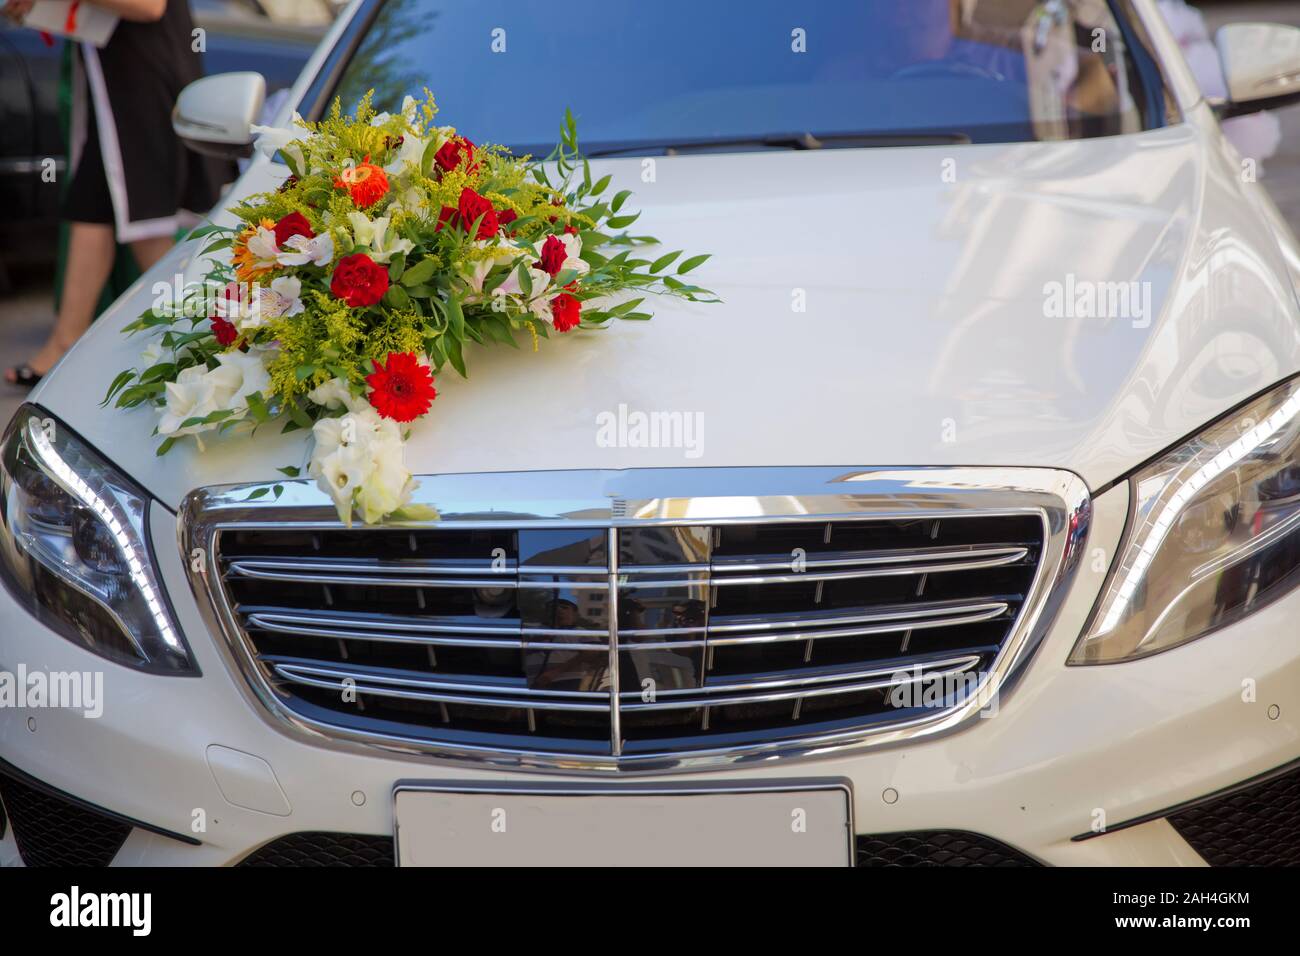 Hochzeit Dekoration Hochzeit Auto. Luxus Hochzeit Auto mit Blumen  dekoriert. Just married Schild und Dosen angebracht Stockfotografie - Alamy